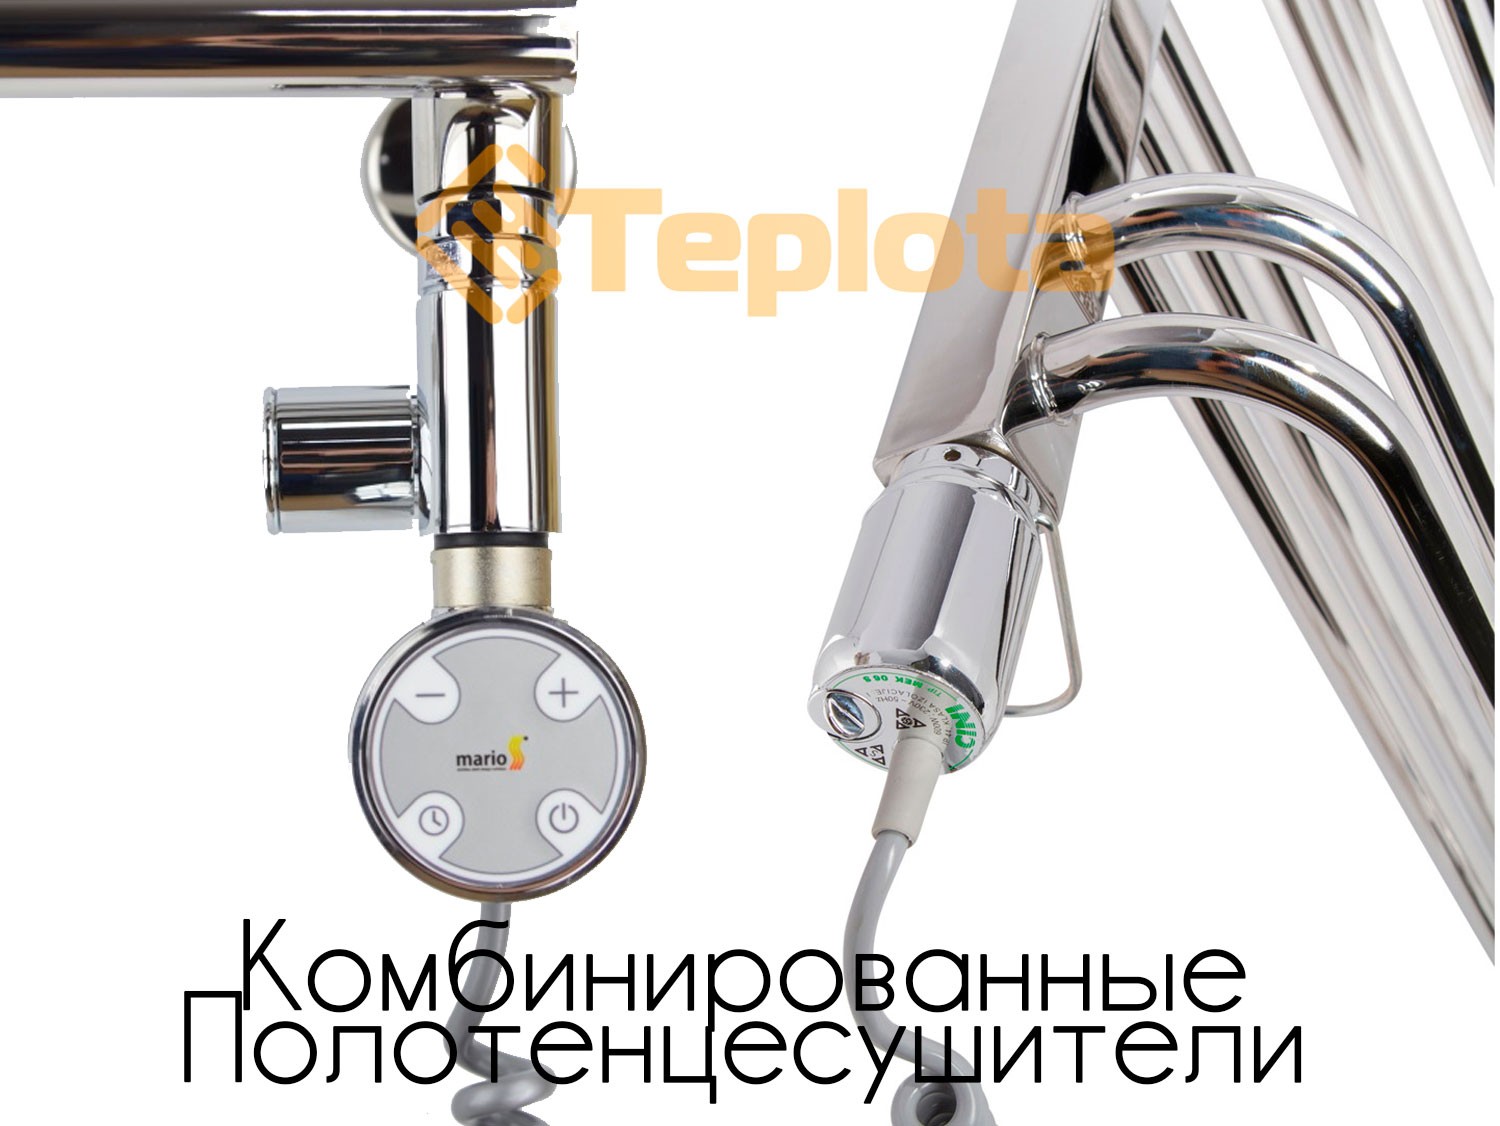  КРИСТАЛЛ 500x900 черный (140 W), (NAVIN), Украина - Электрический полотенцесушитель (стеклянная панель) 